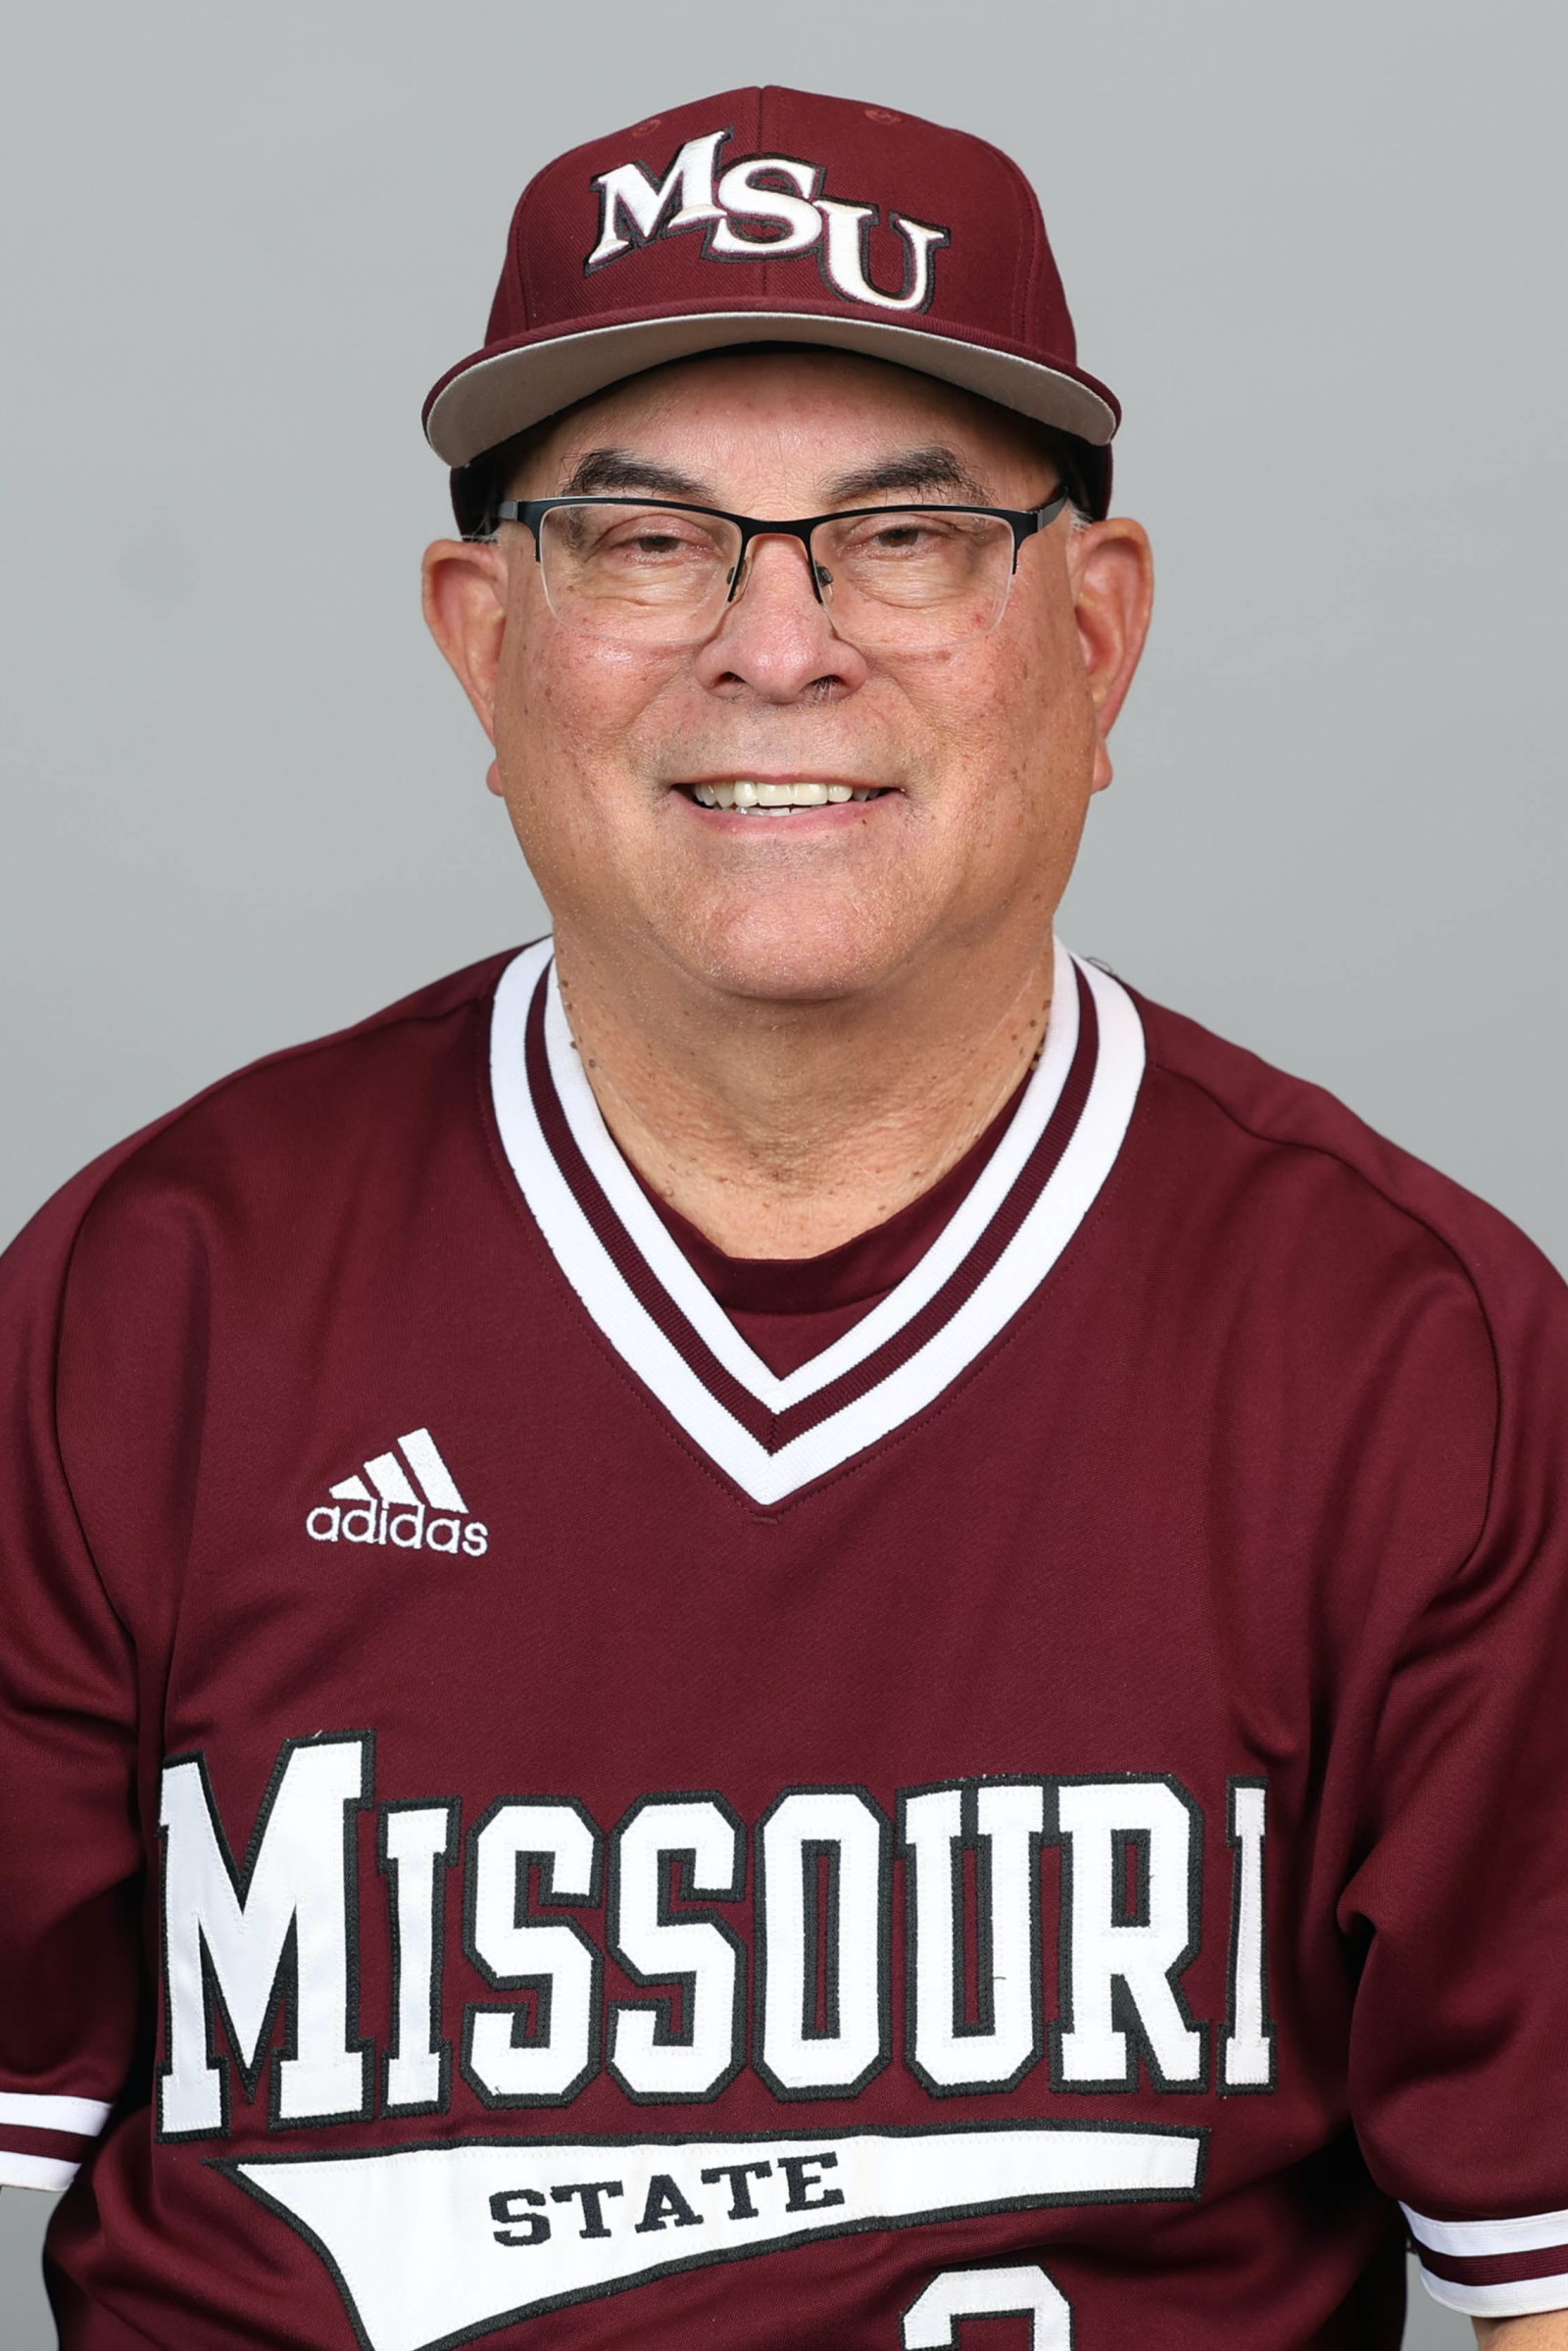 Missouri State baseball coach Keith Guttin